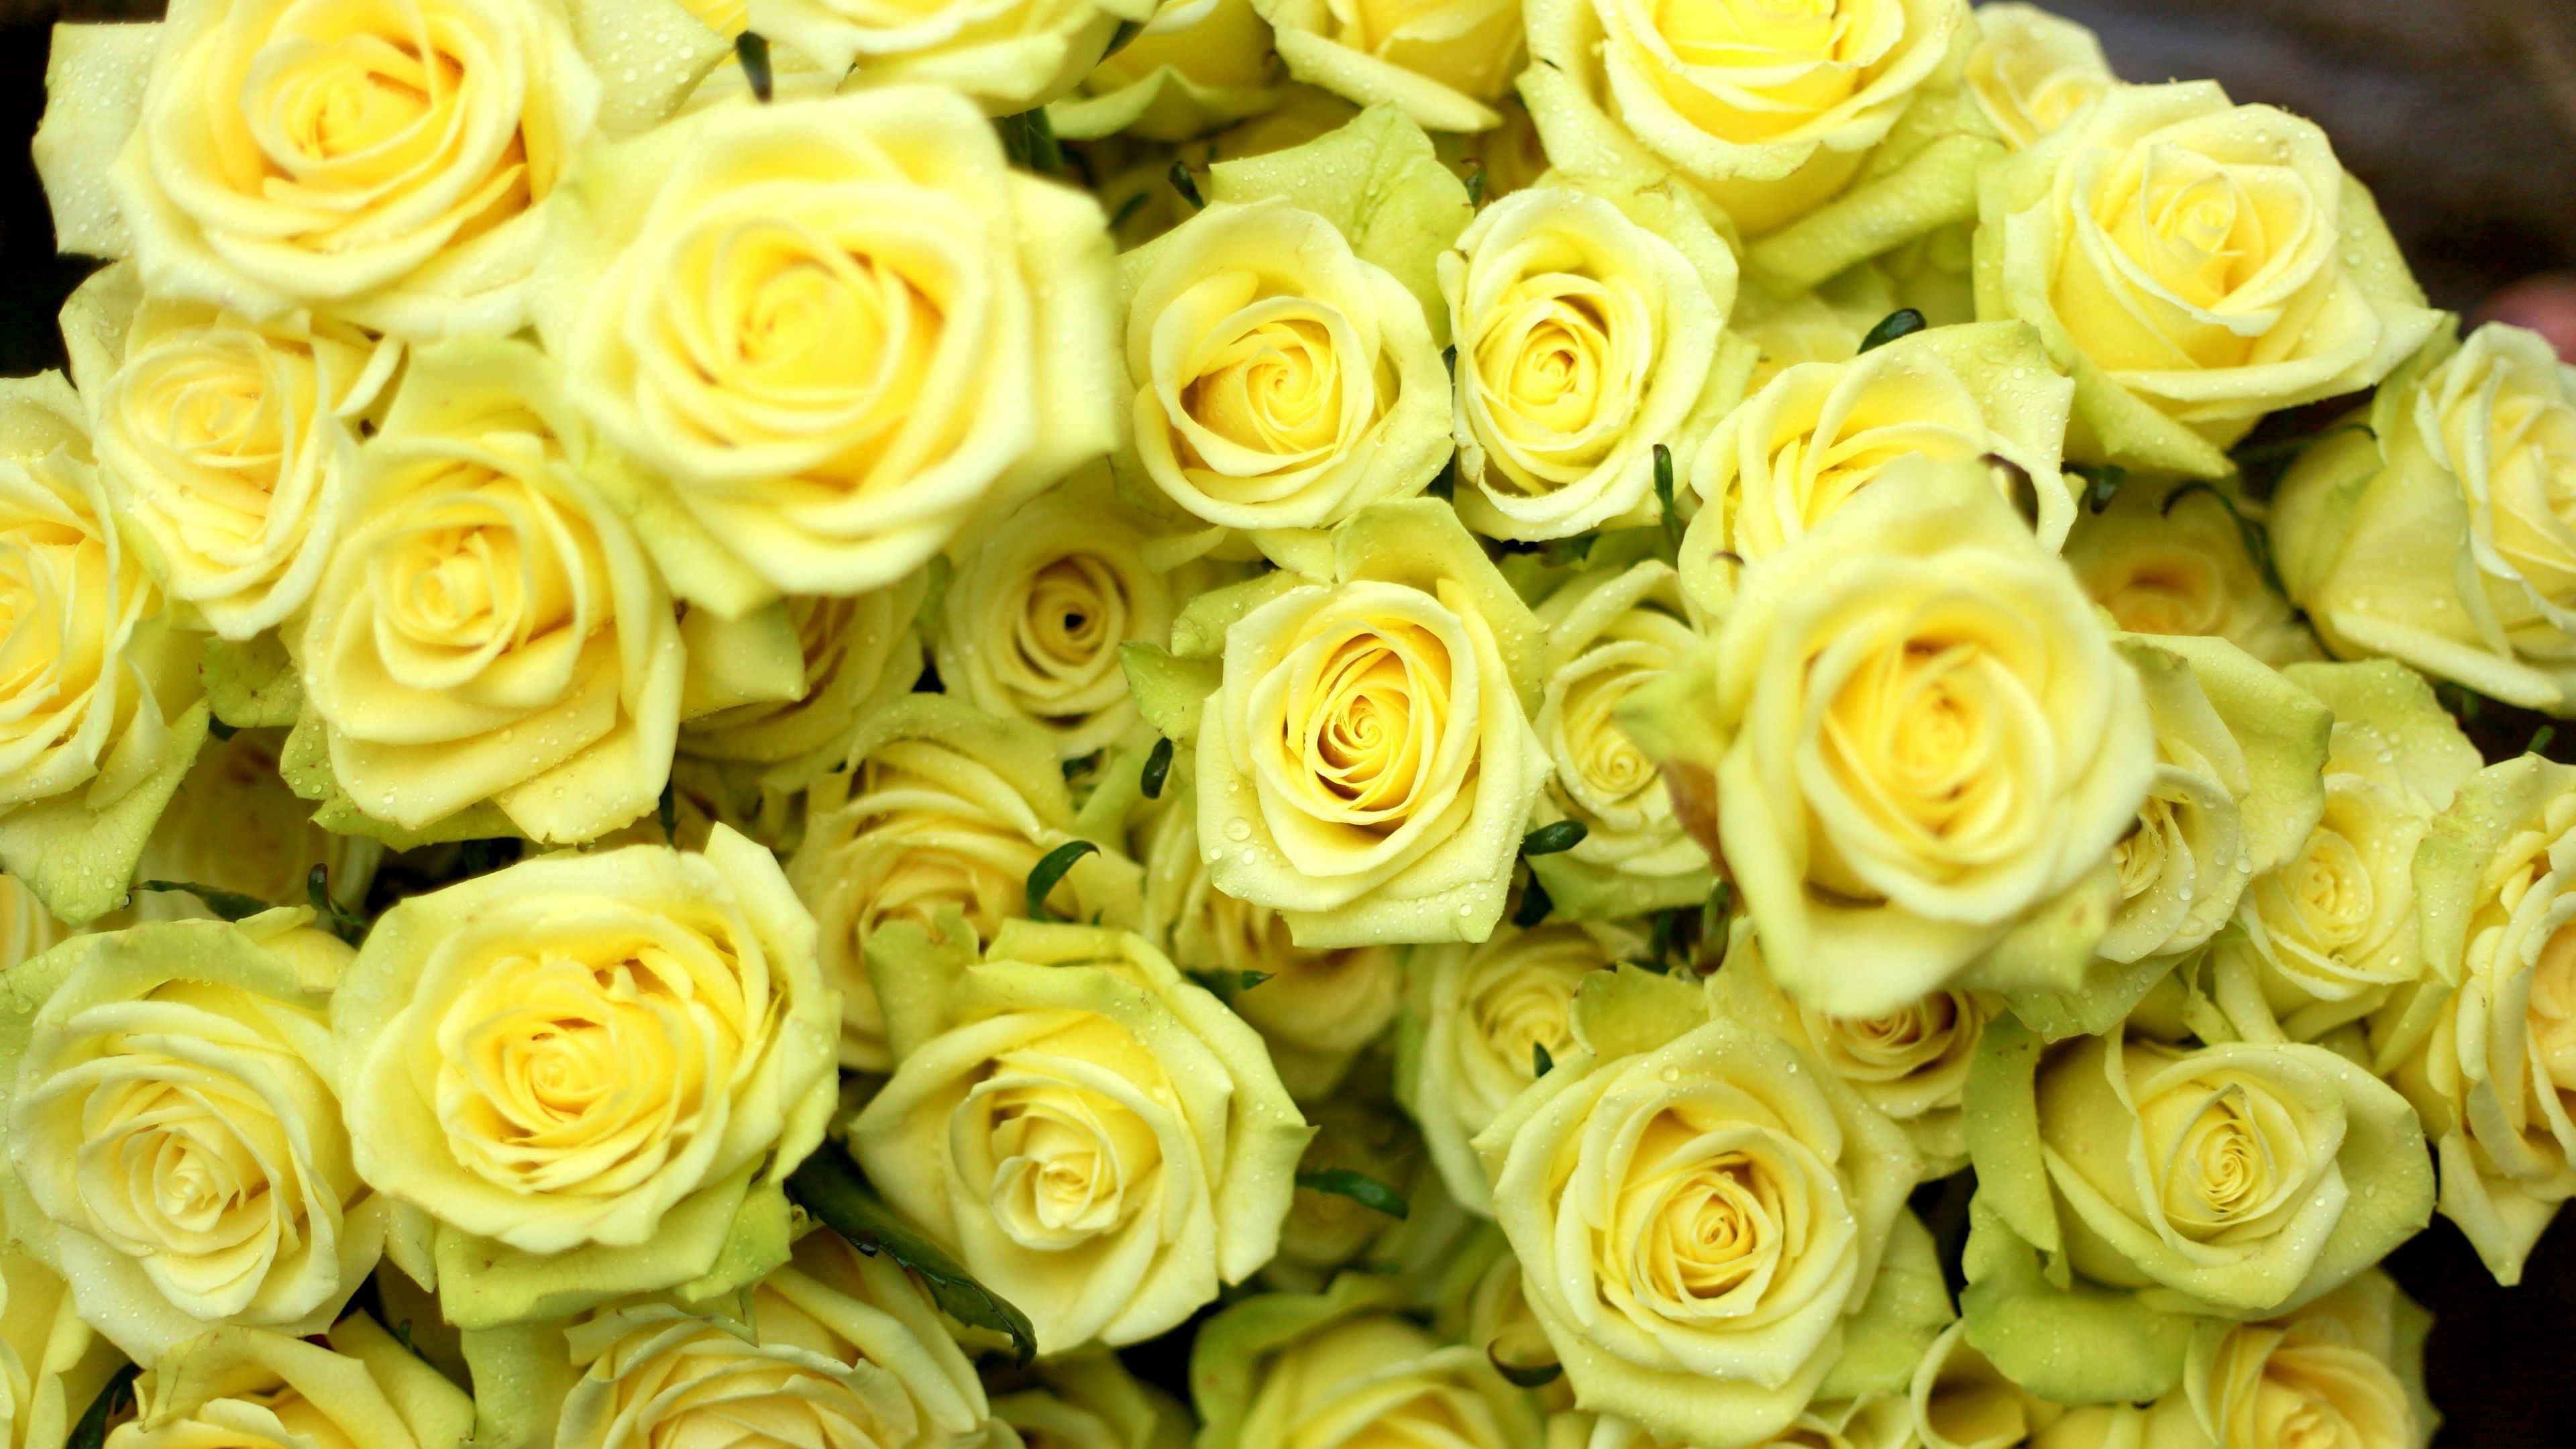 Hình nền về hoa hồng màu vàng